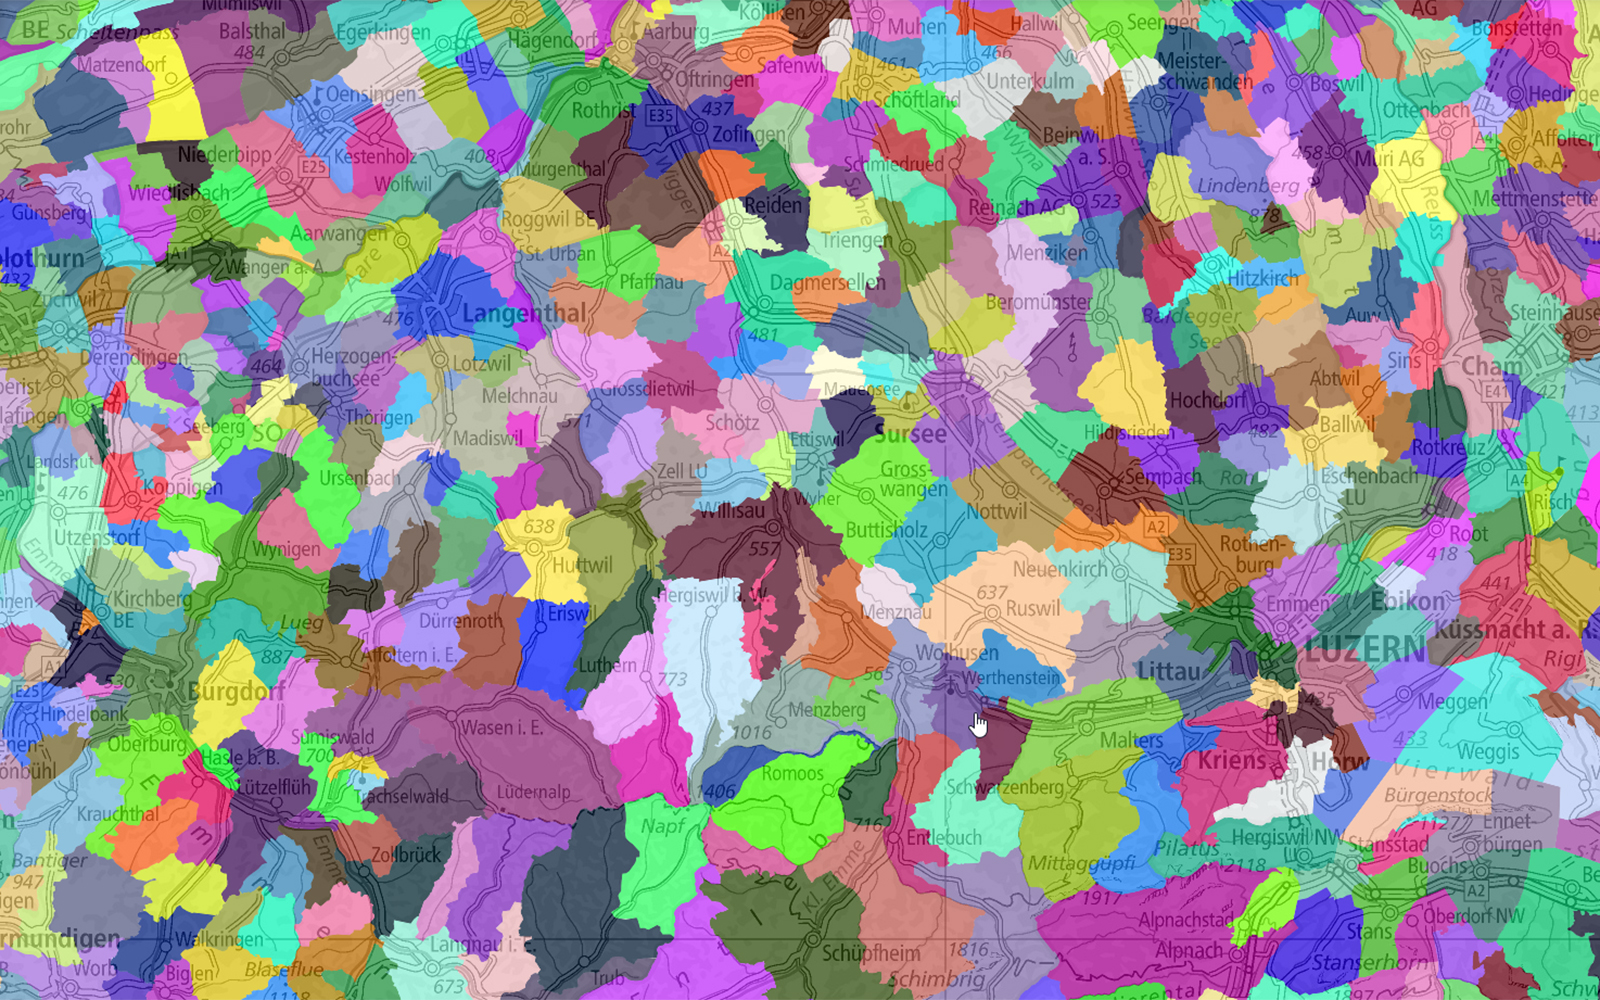 L'immagine mostra una sezione della mappa da Lucerna a Soletta, con i perimetri dell'elenco ufficiale dei luoghi colorati.